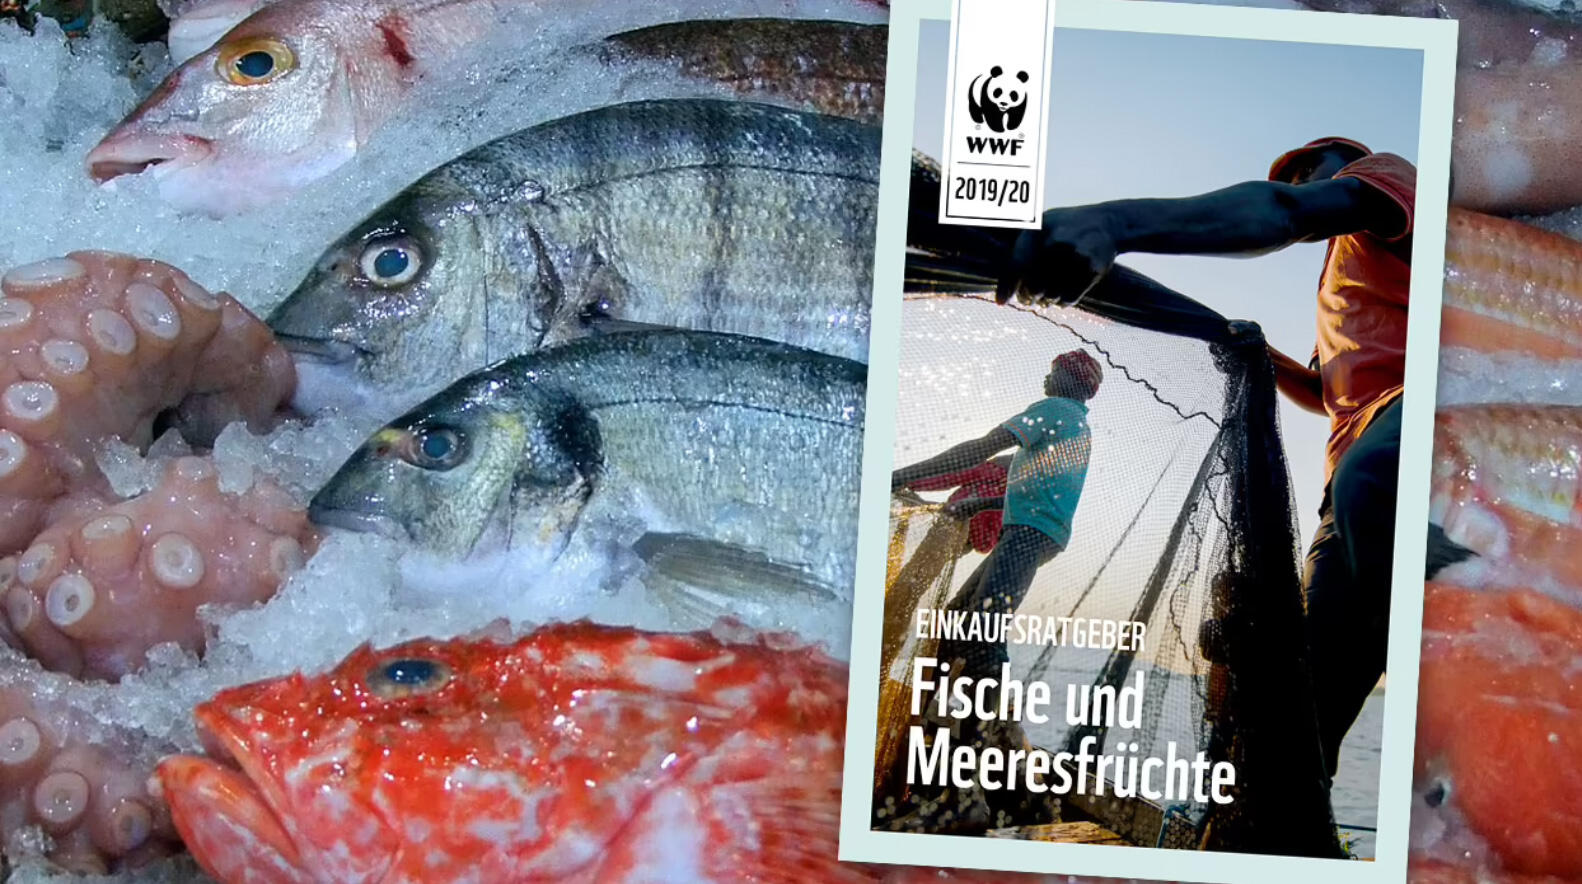 Der WWF-Fischratgeber listet Fischarten auf, die noch nicht überfischt sind.